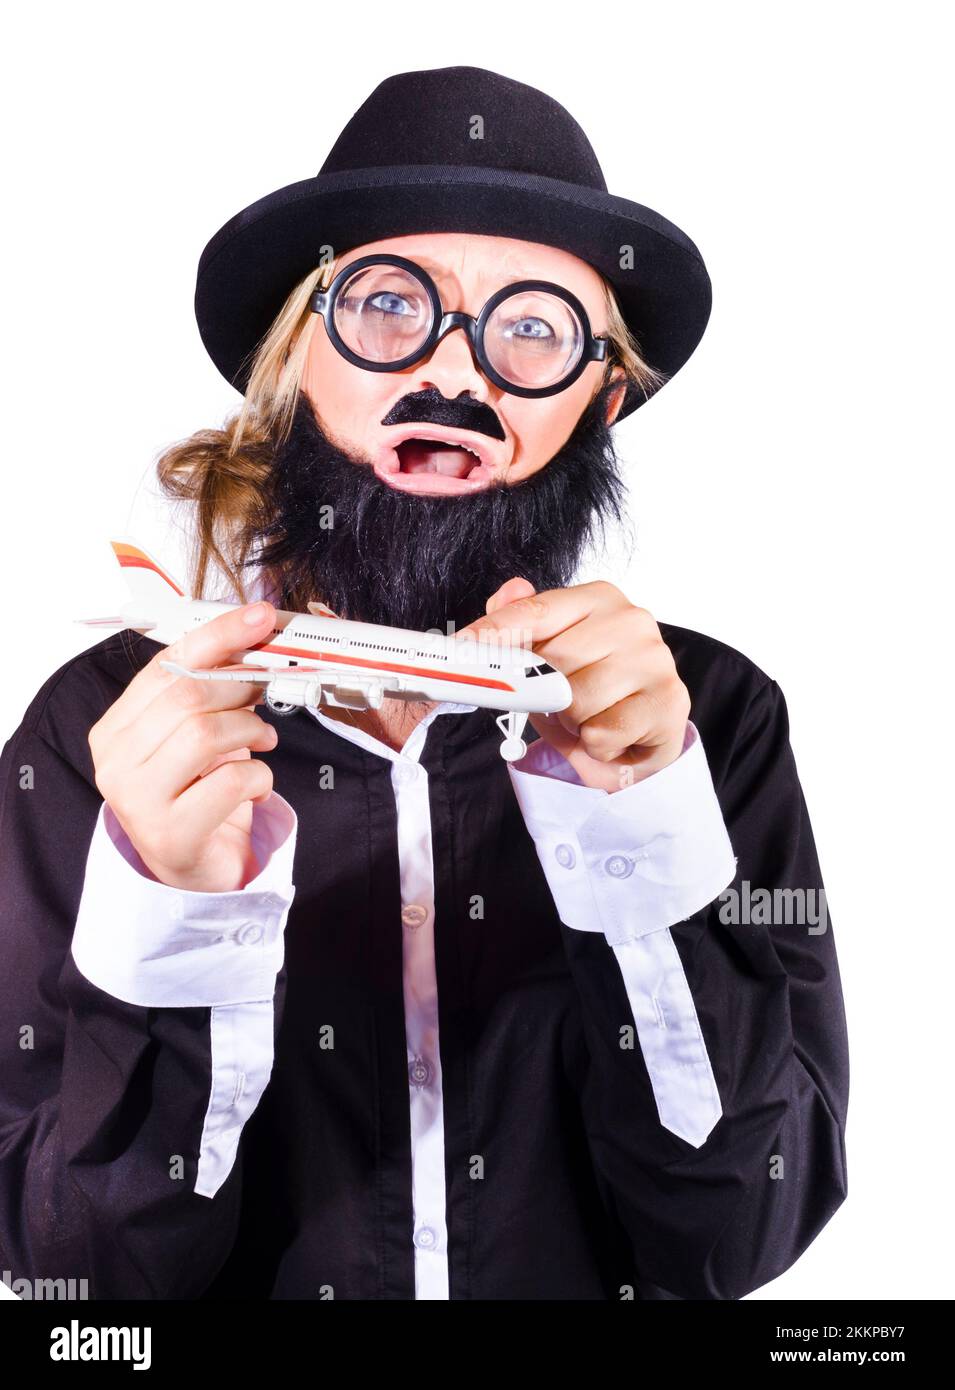 Crazy femminile travestito come un uomo che indossa cappello nero del  trilby di homburg, barba finta, baffi e grandi occhiali da rimm, jacking un  aereo jumbo jet in un Foto stock 